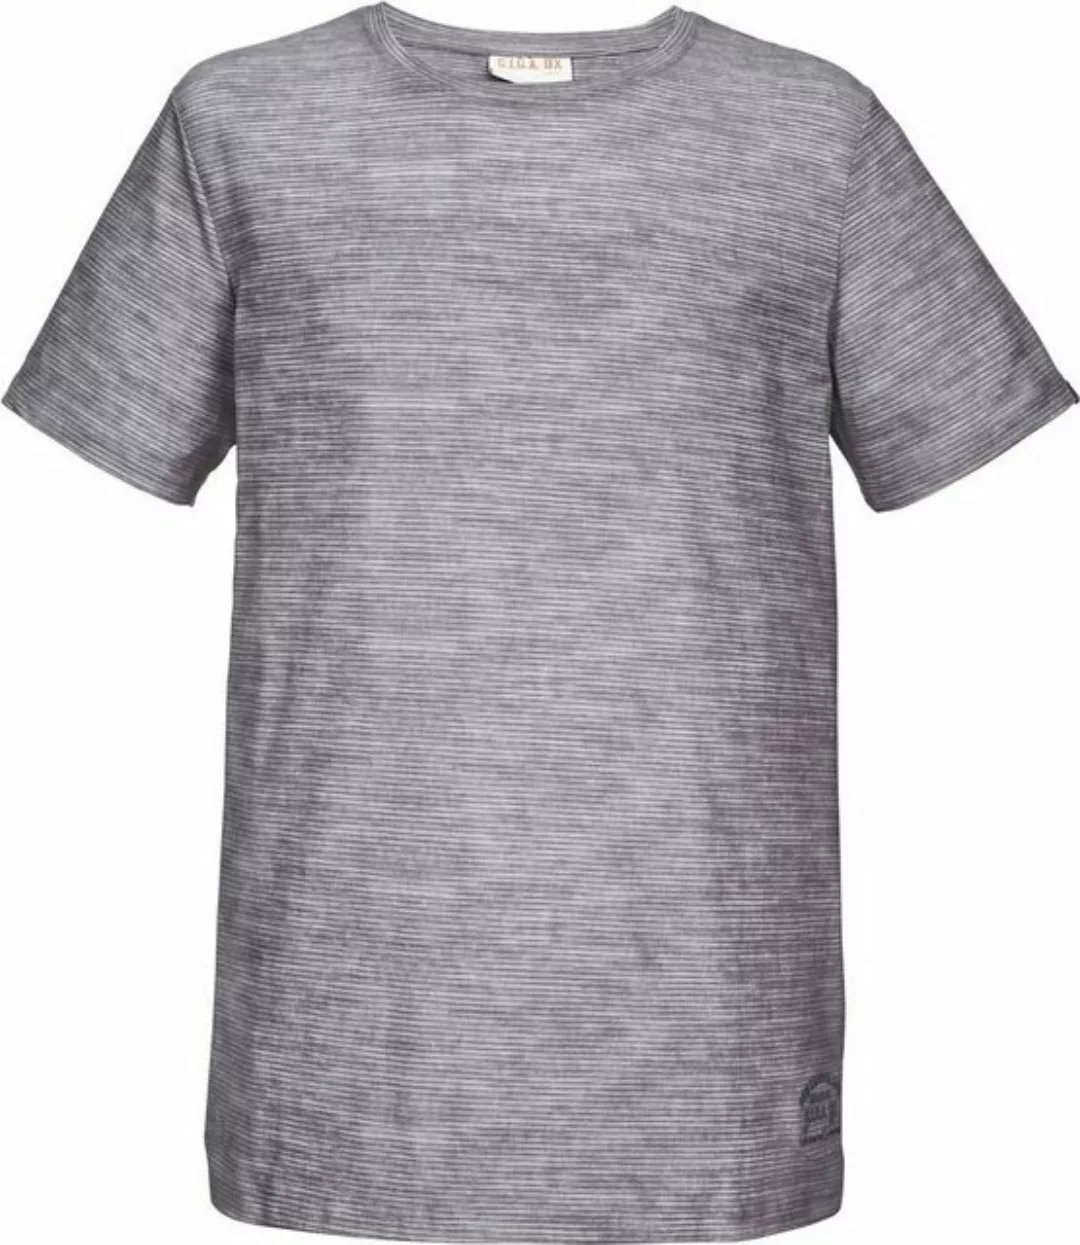 G.I.G.A. DX T-Shirt G.I.G.A. DX Herren T-Shirt in gestreifter Melange Optik günstig online kaufen